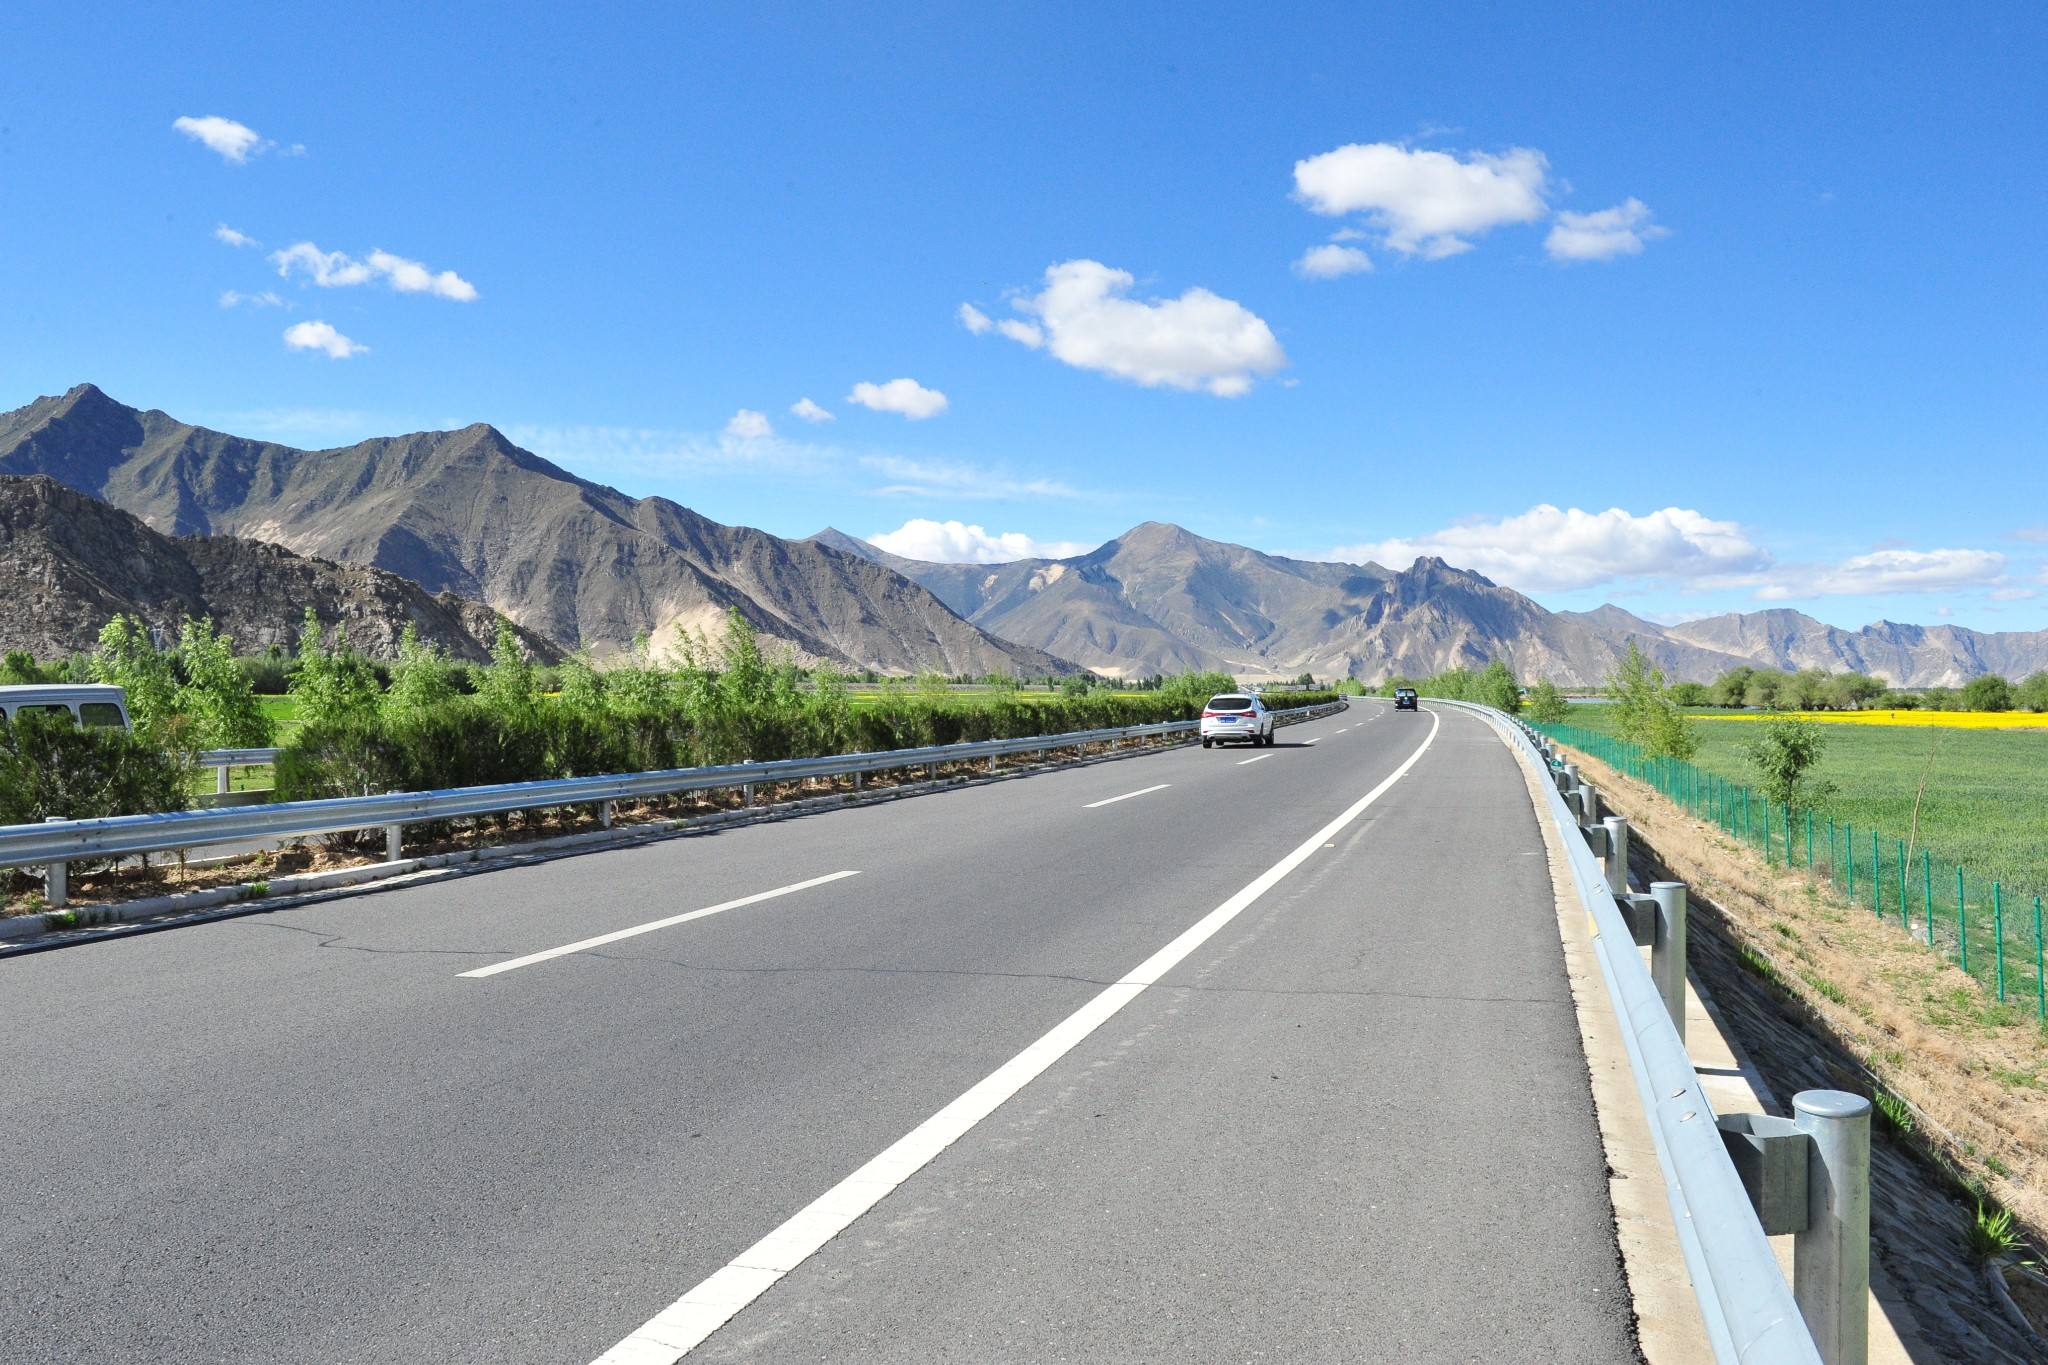 印度博主拍摄中国湛江高速公路,印度网友:再过5年印度就可以拥有